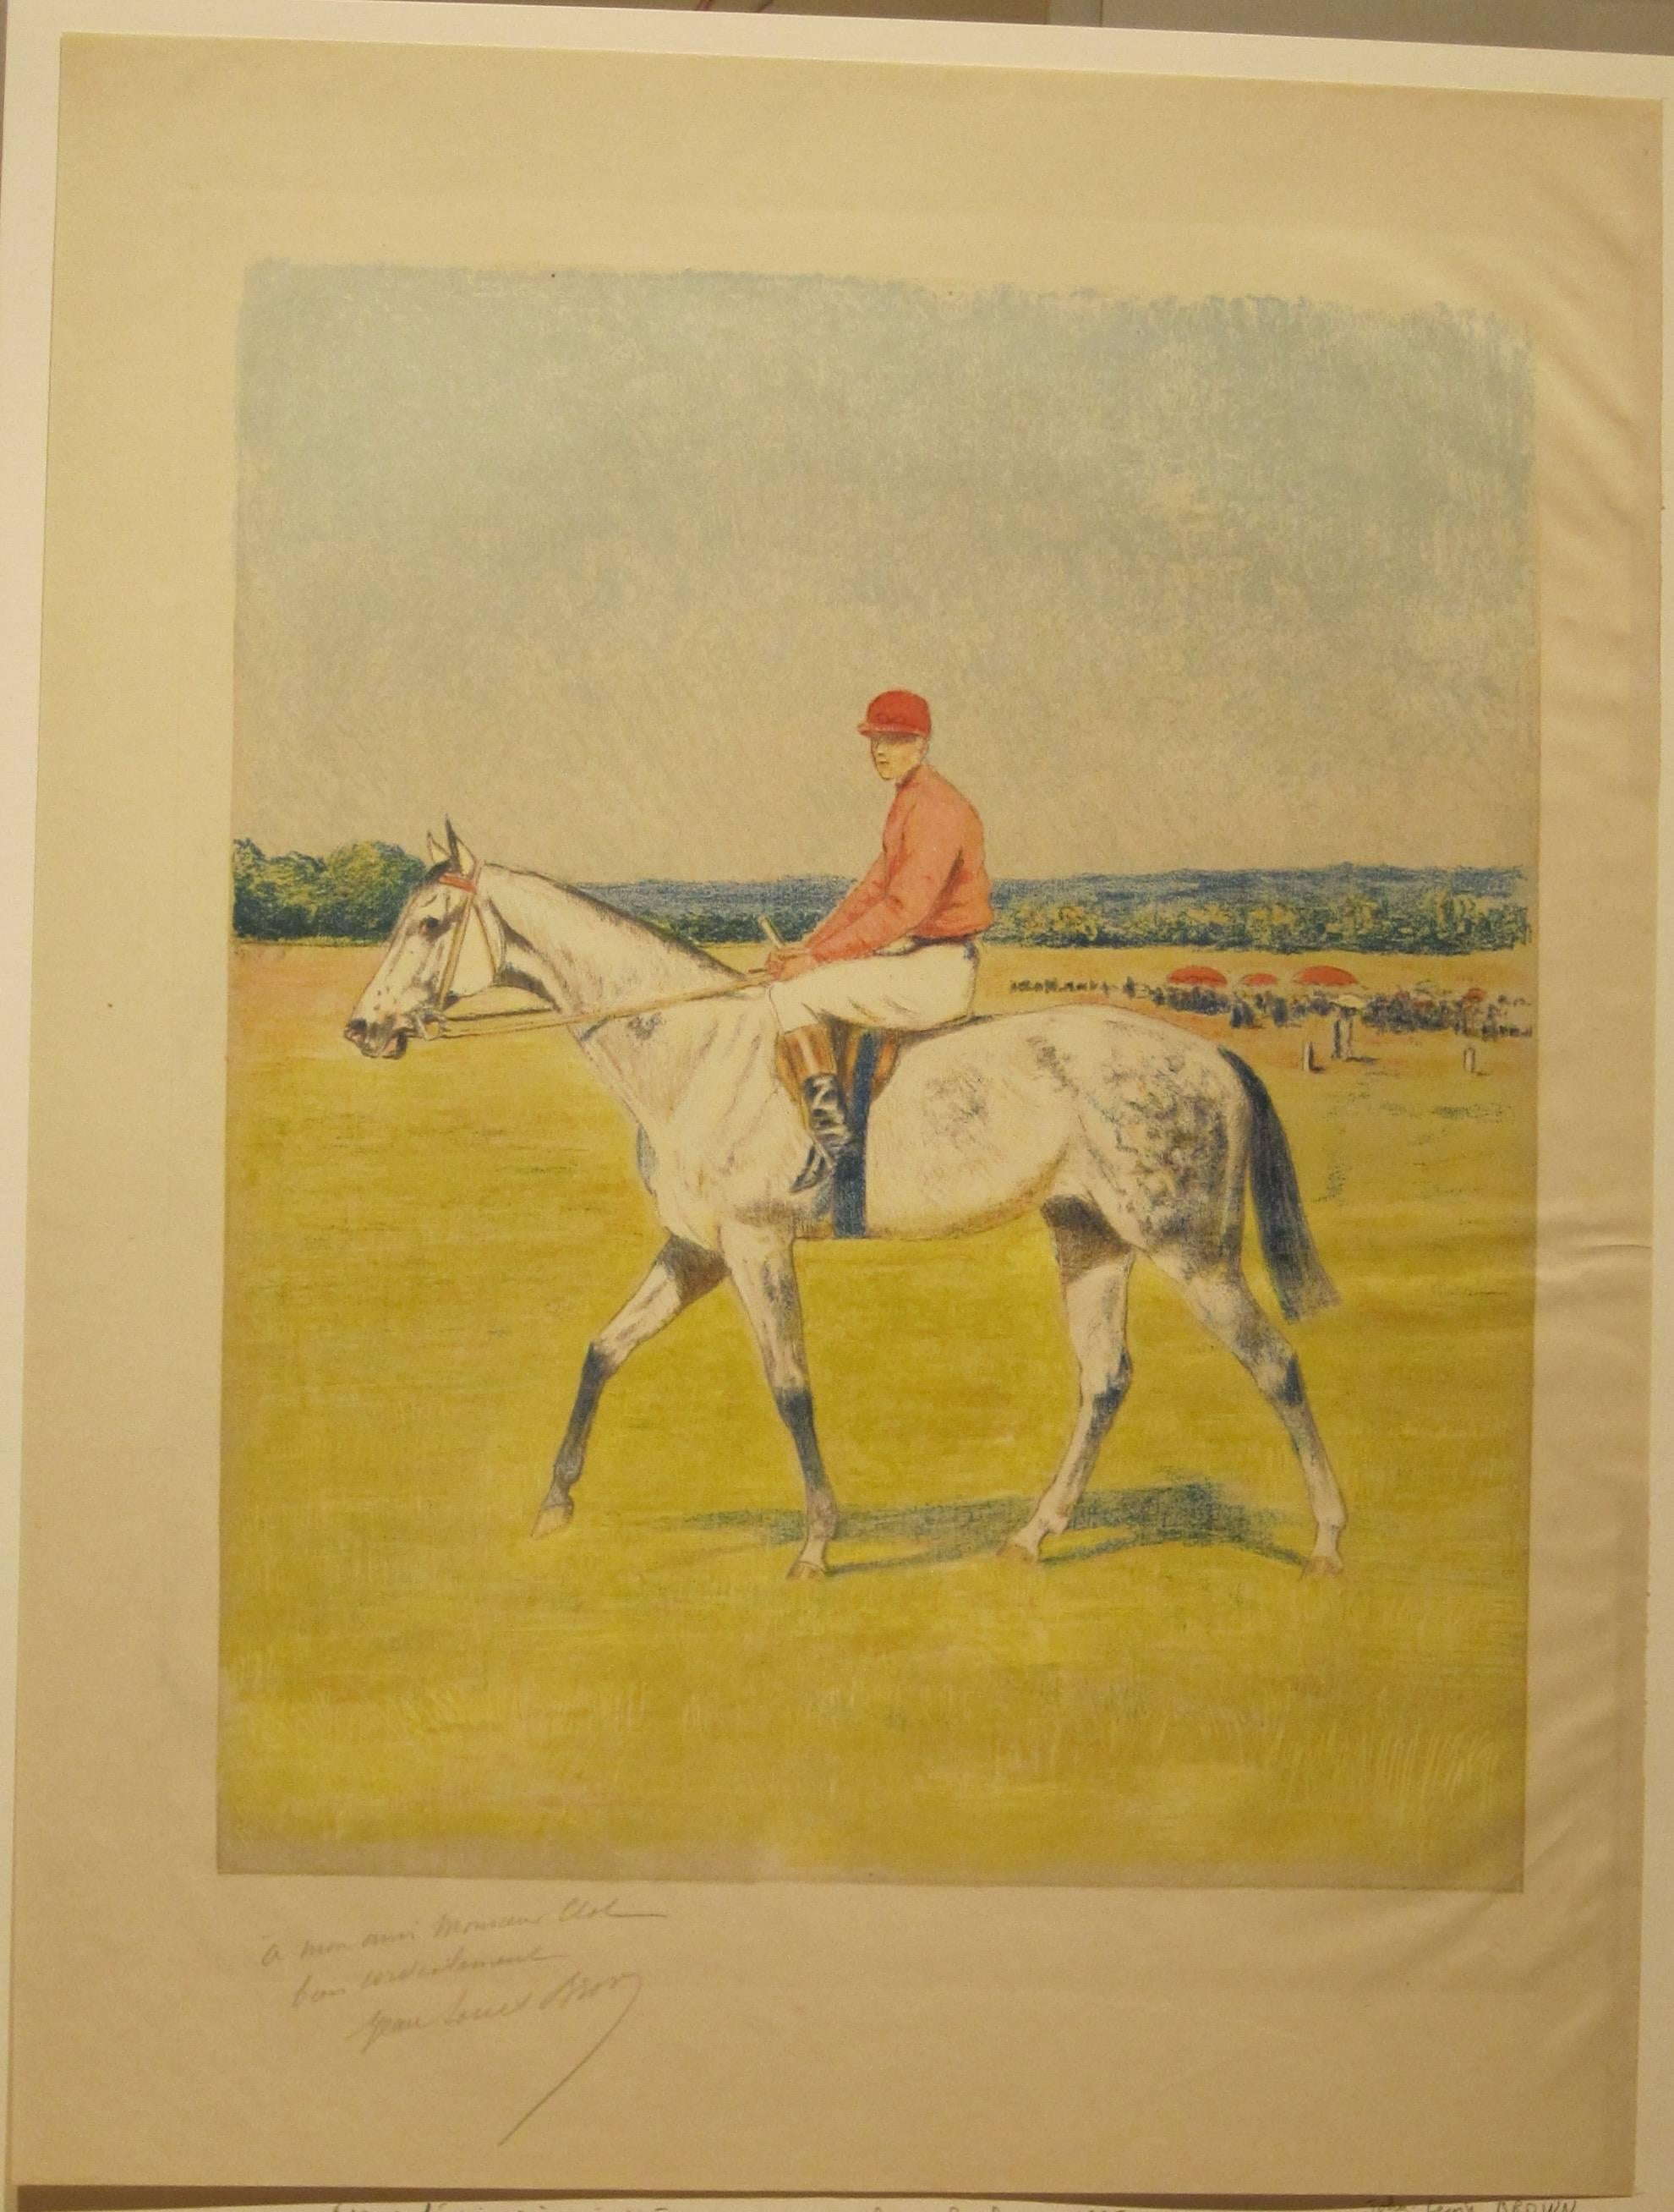 Jockey on horseback. - Print by John Lewis Brown